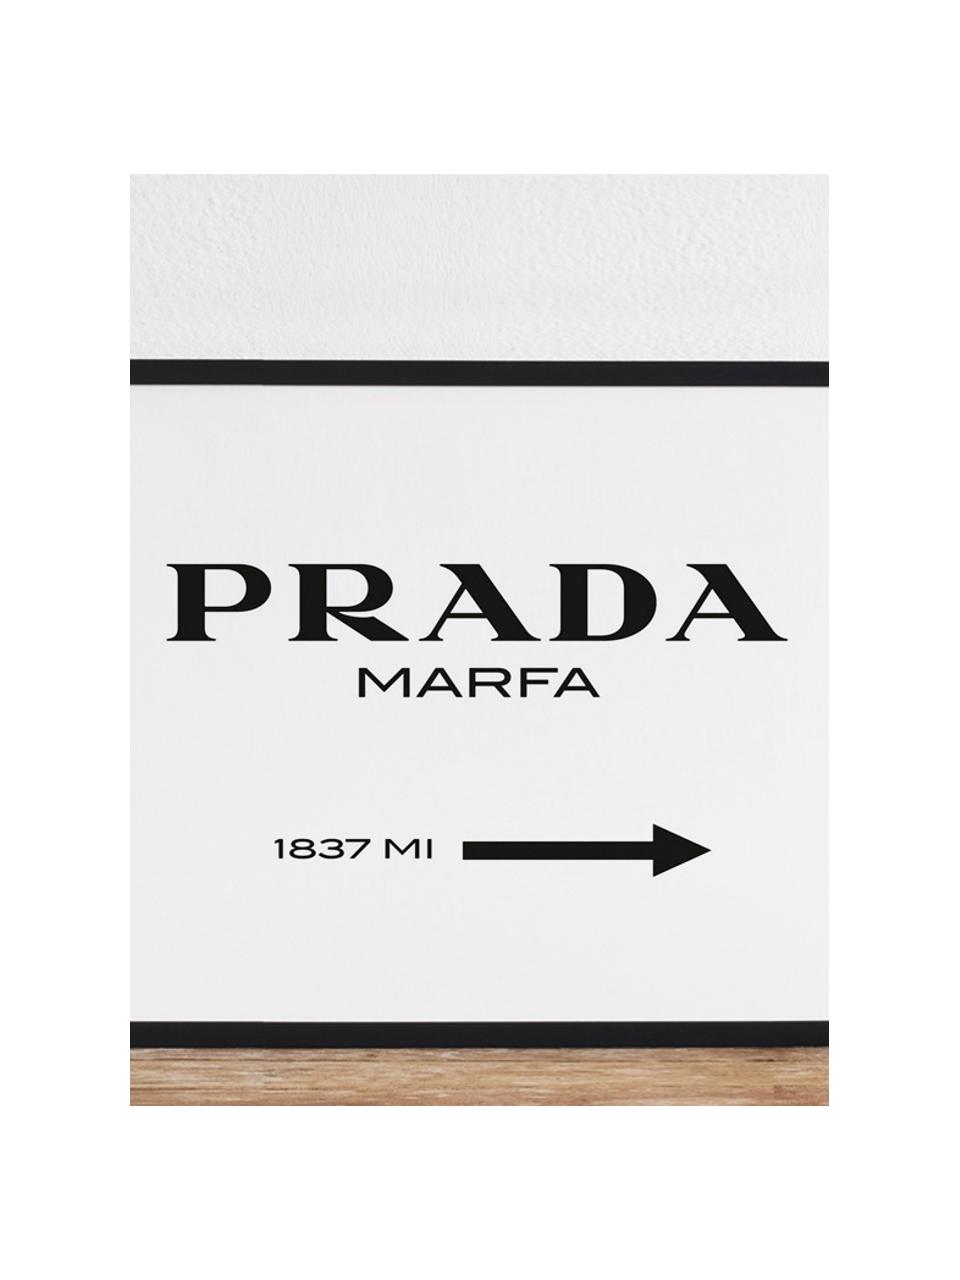 Gerahmter Digitaldruck Prada Marfa, Bild: Digitaldruck auf Papier, , Rahmen: Holz, lackiert, Front: Plexiglas, Schwarz, Weiß, B 43 x H 33 cm